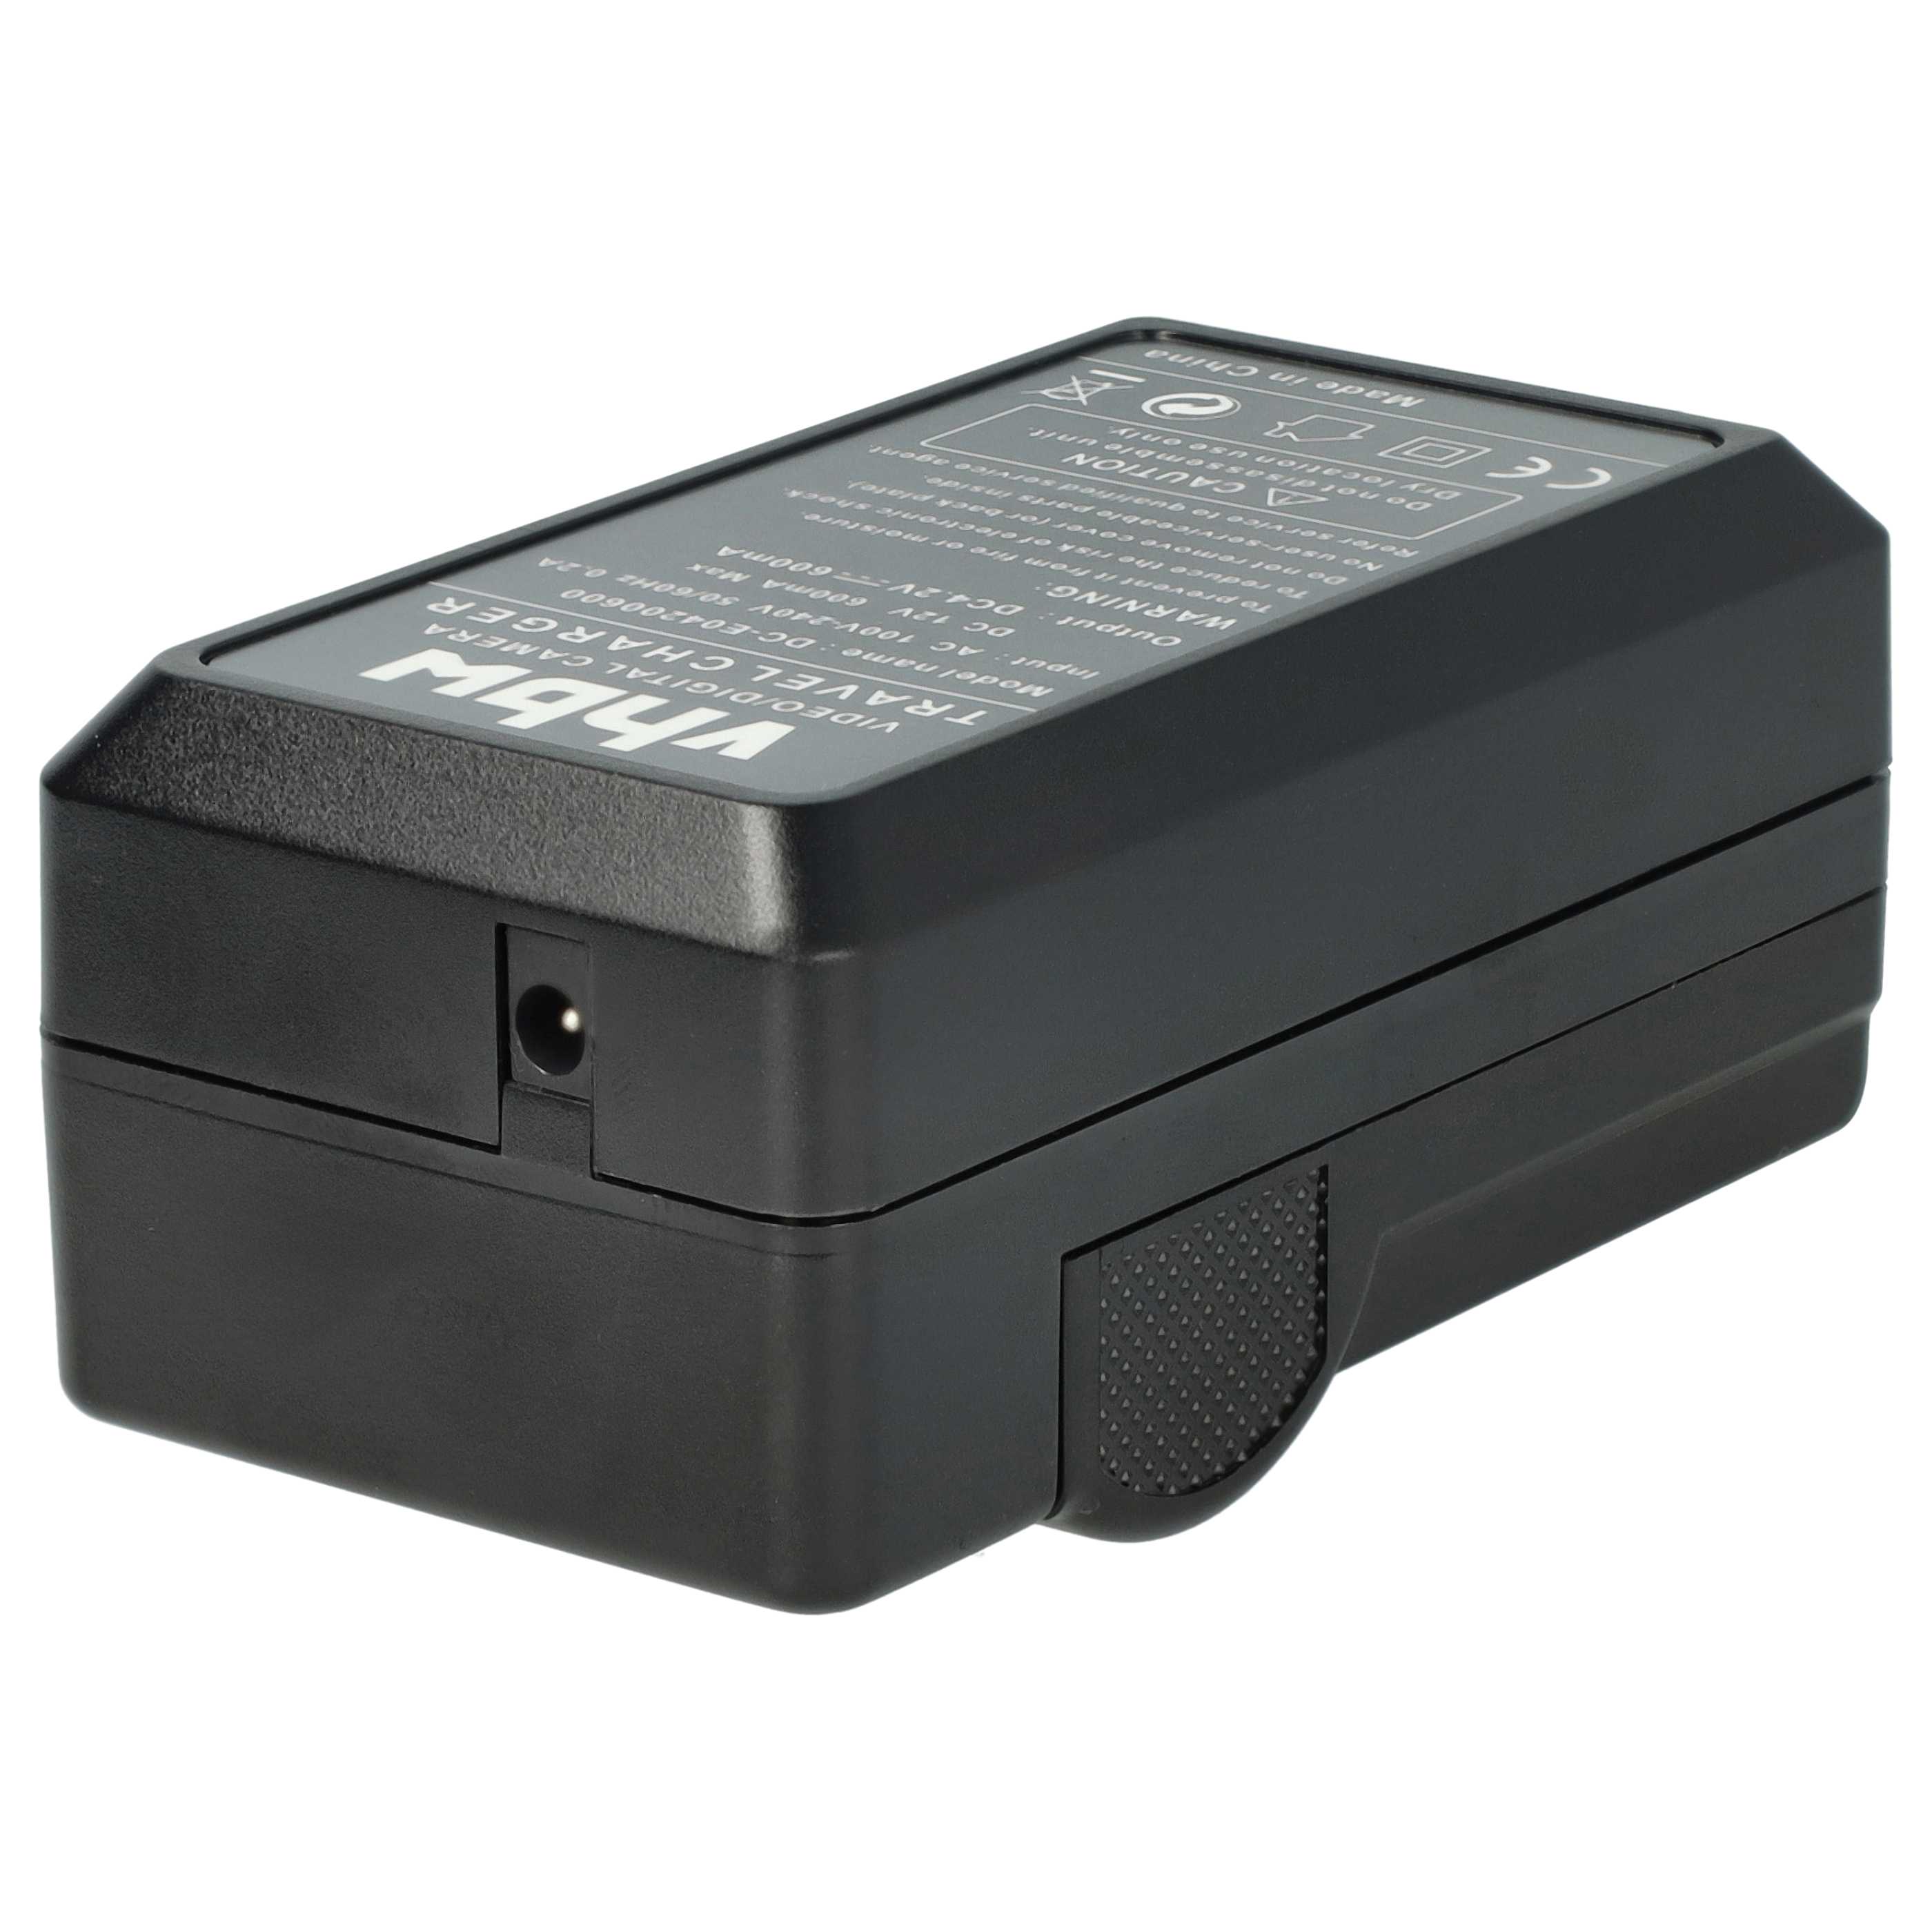 Akku Ladegerät passend für Lumix DMC-F5P Kamera u.a. - 0,6 A, 4,2 V